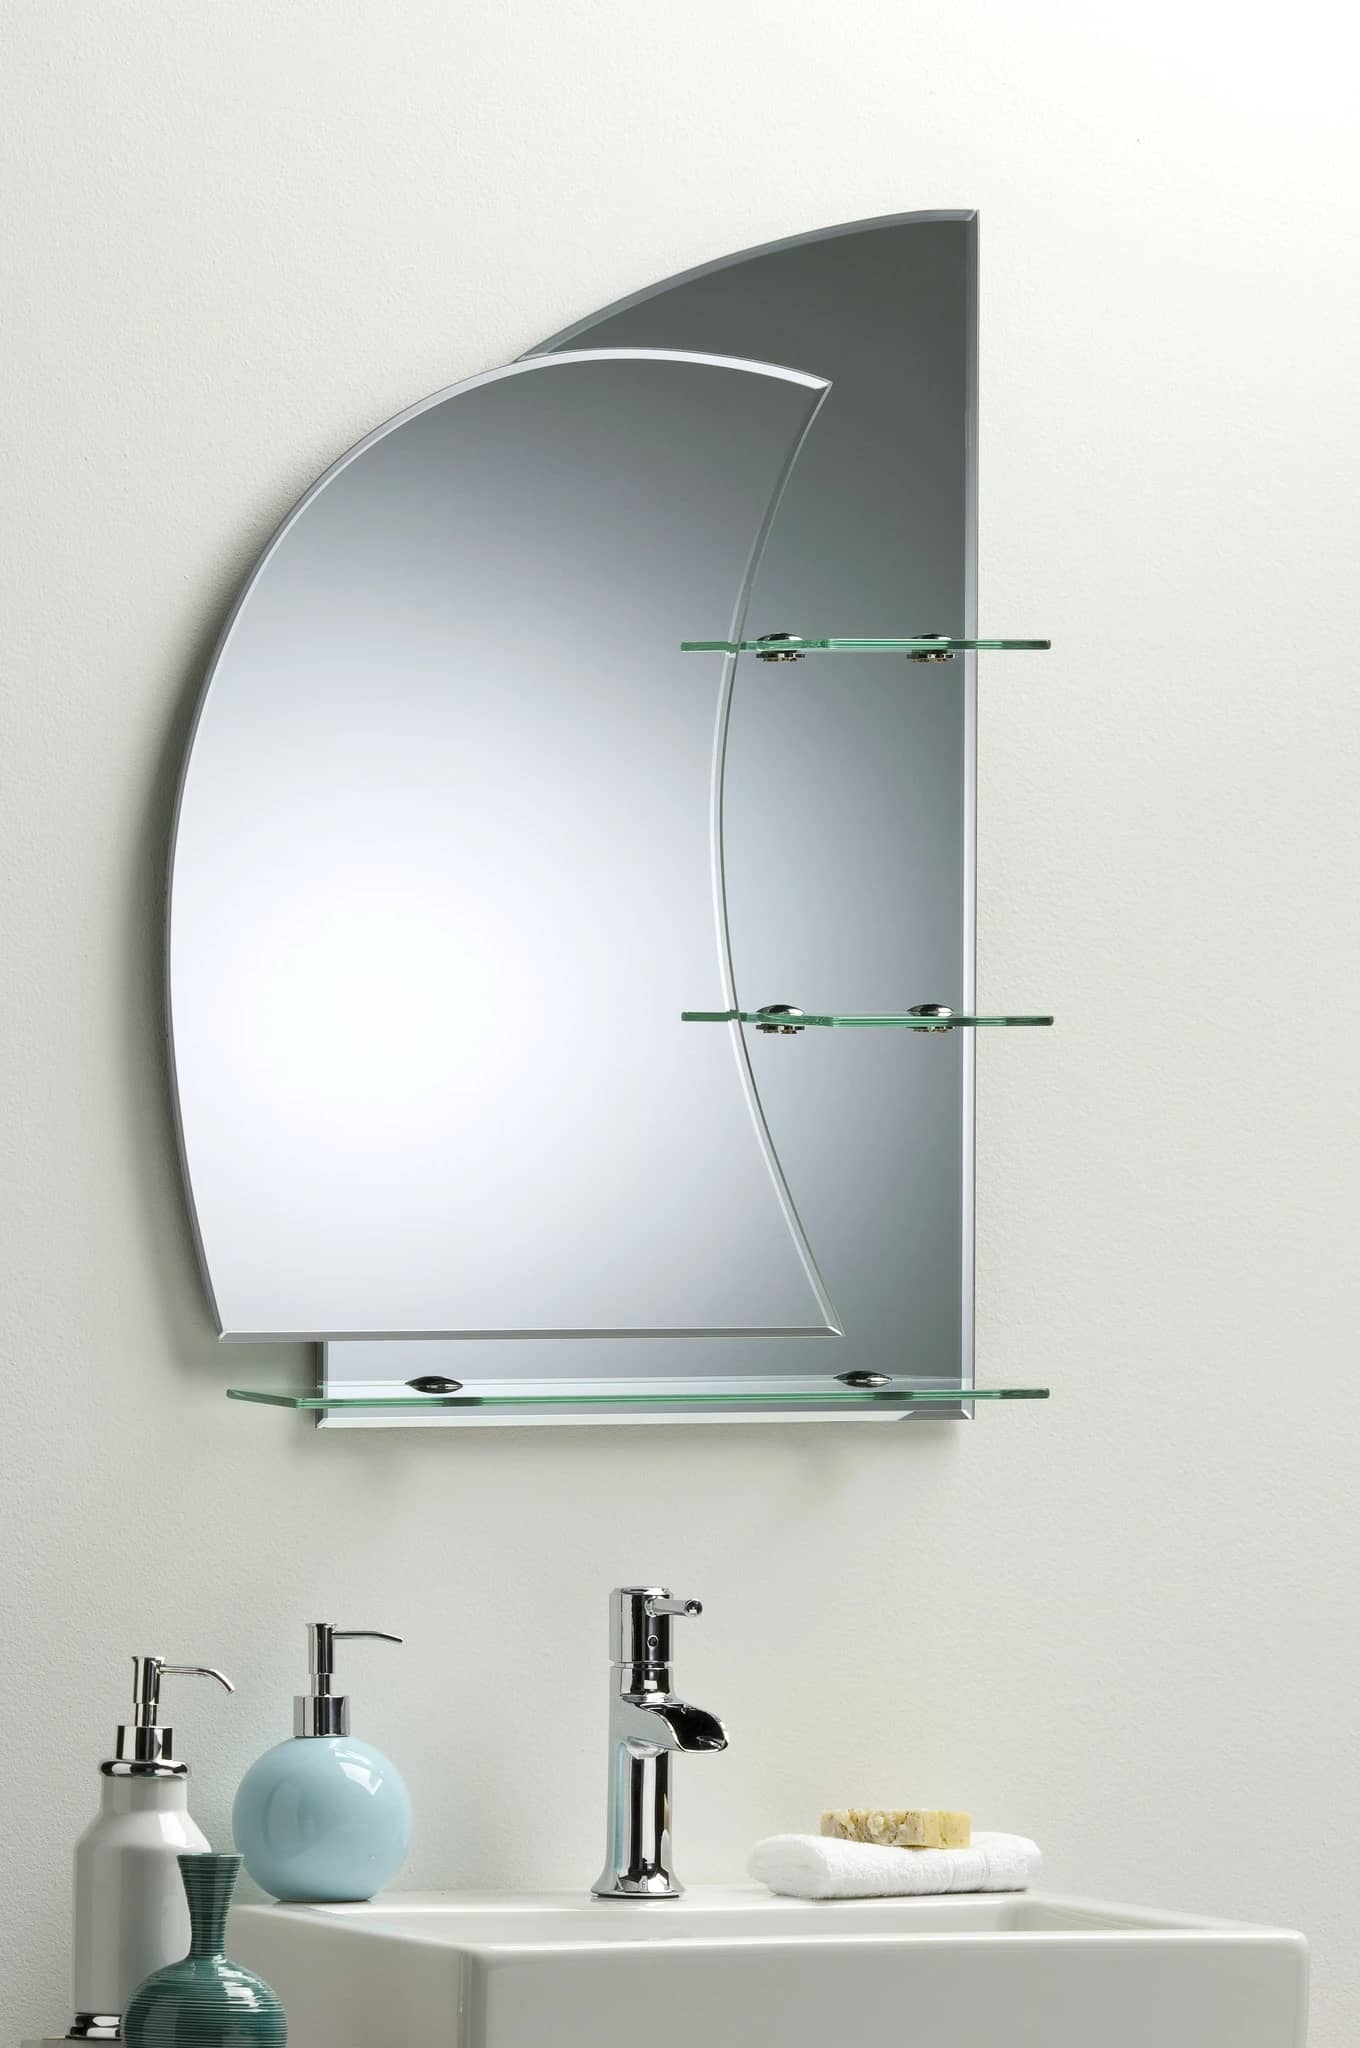 Купить полку в ванную комнату с зеркалом. Зеркало с полкой 610*740 "роса". Зеркало Парус nnlm16. Зеркало для ванной комнаты. Зеркала в ванную комнату с полочками.